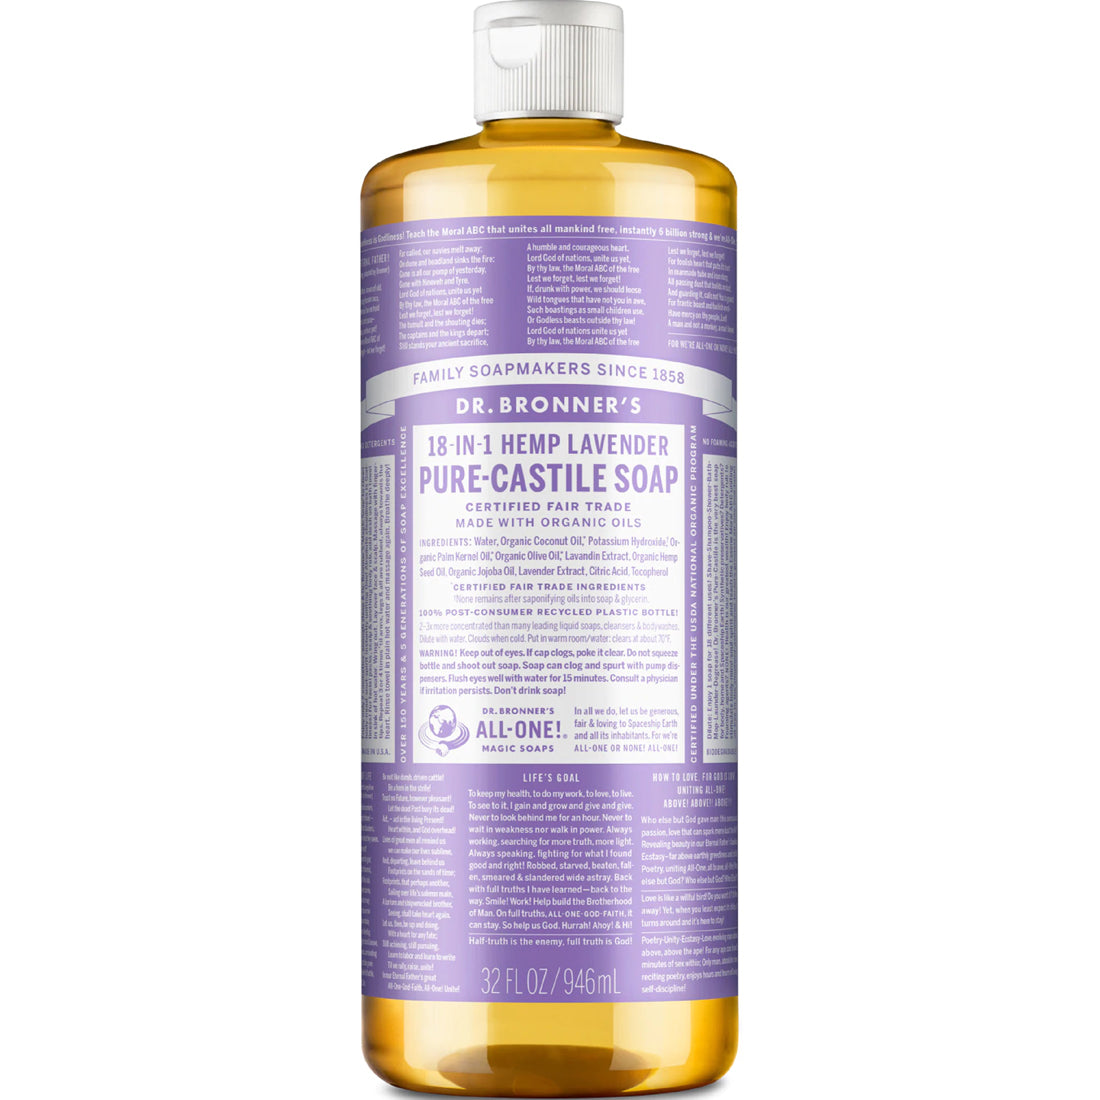 Dr. Bronner's Organic Liquid Castile Oil Soap